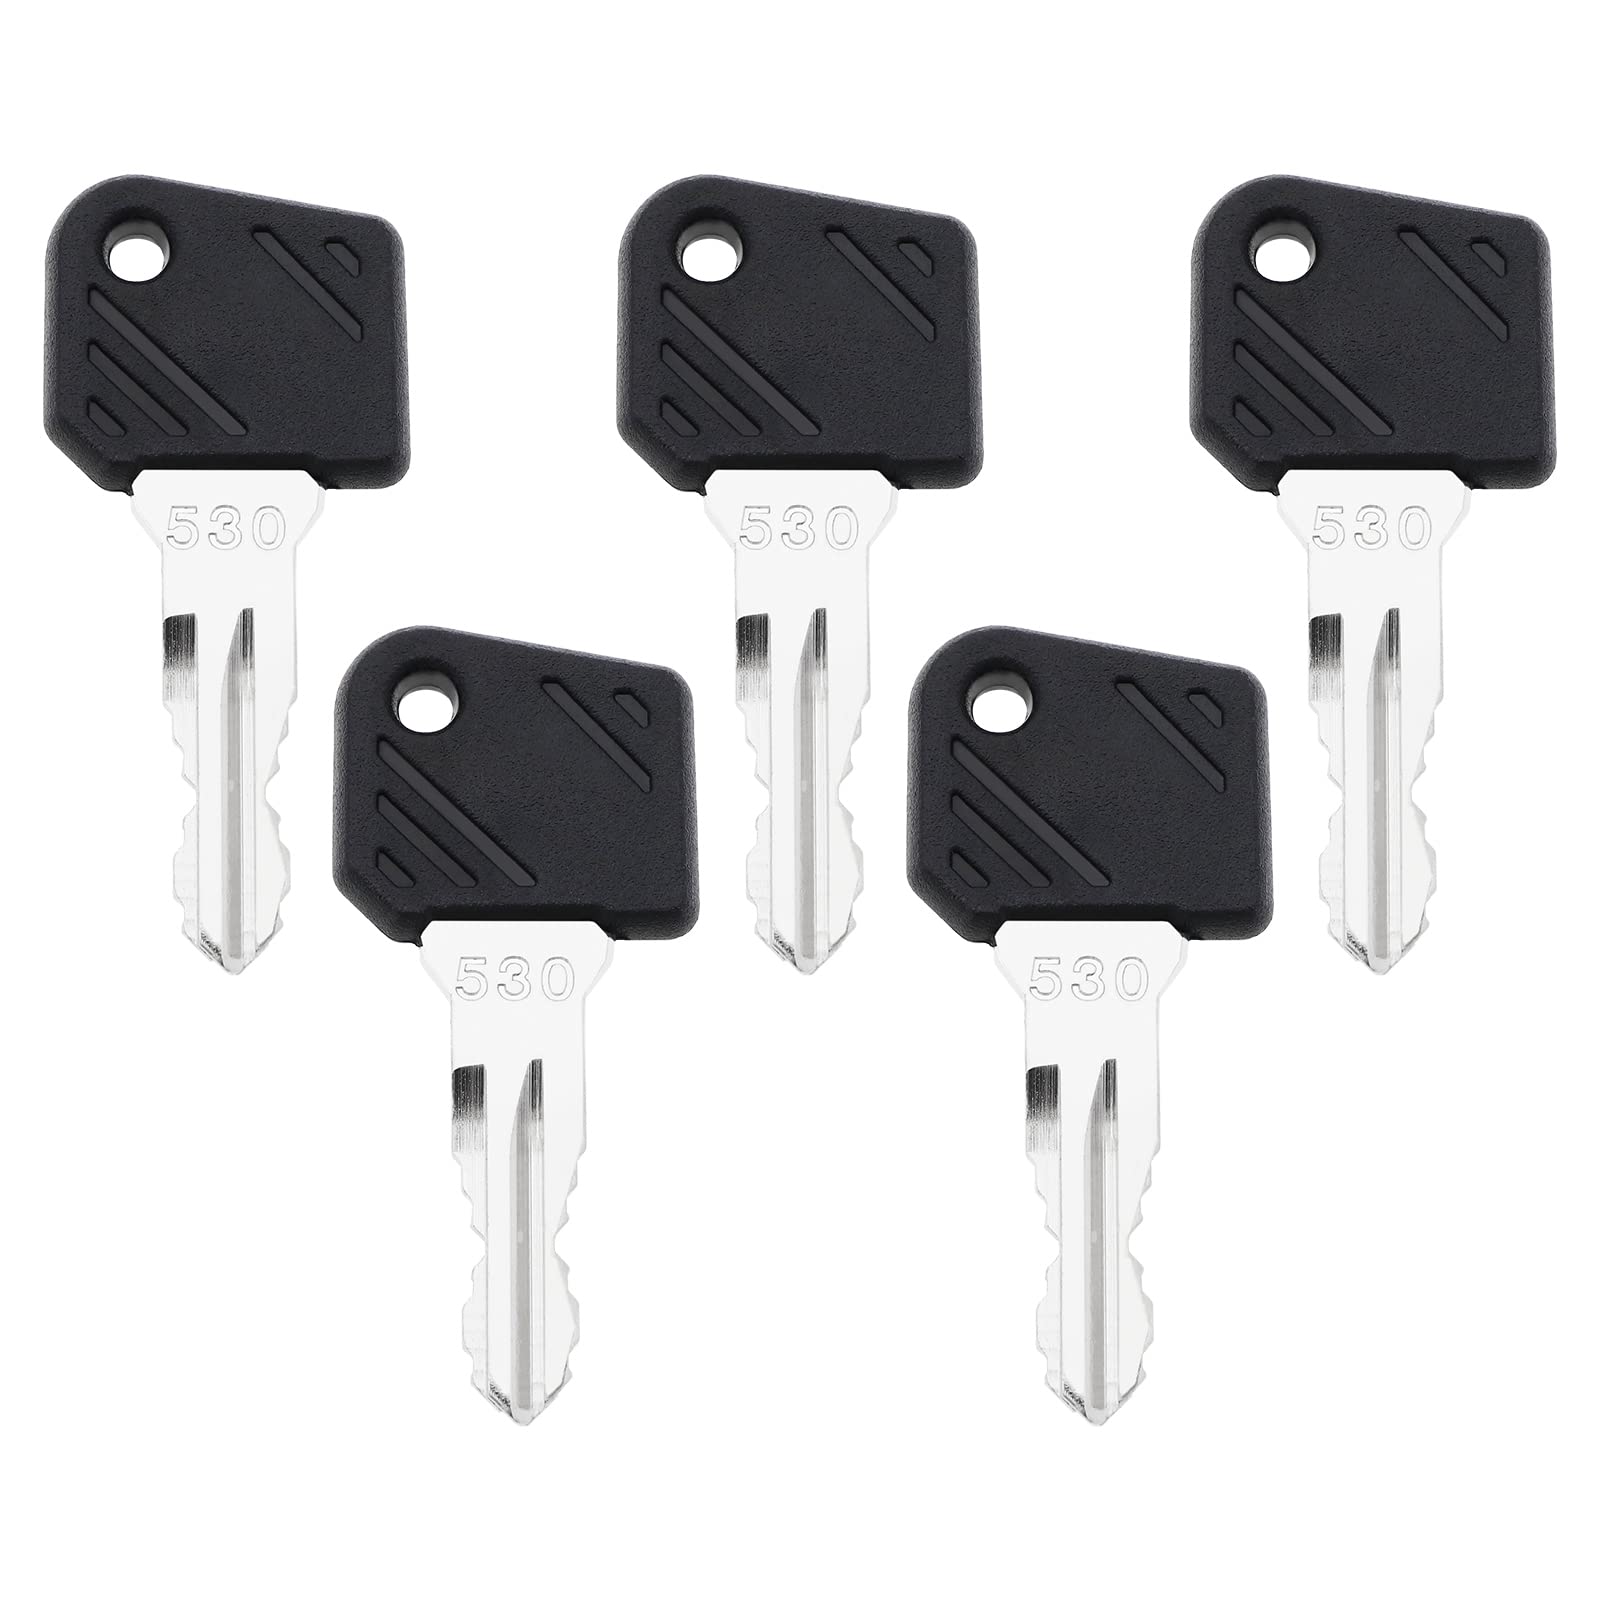 5 Stück 530 Zündschlüssel Kompatibel mit Heli-Gabelstaplern Kompatibel mit Linde-Gabelstaplern für Schwere Geräte Ersatzschlüssel von Create idea